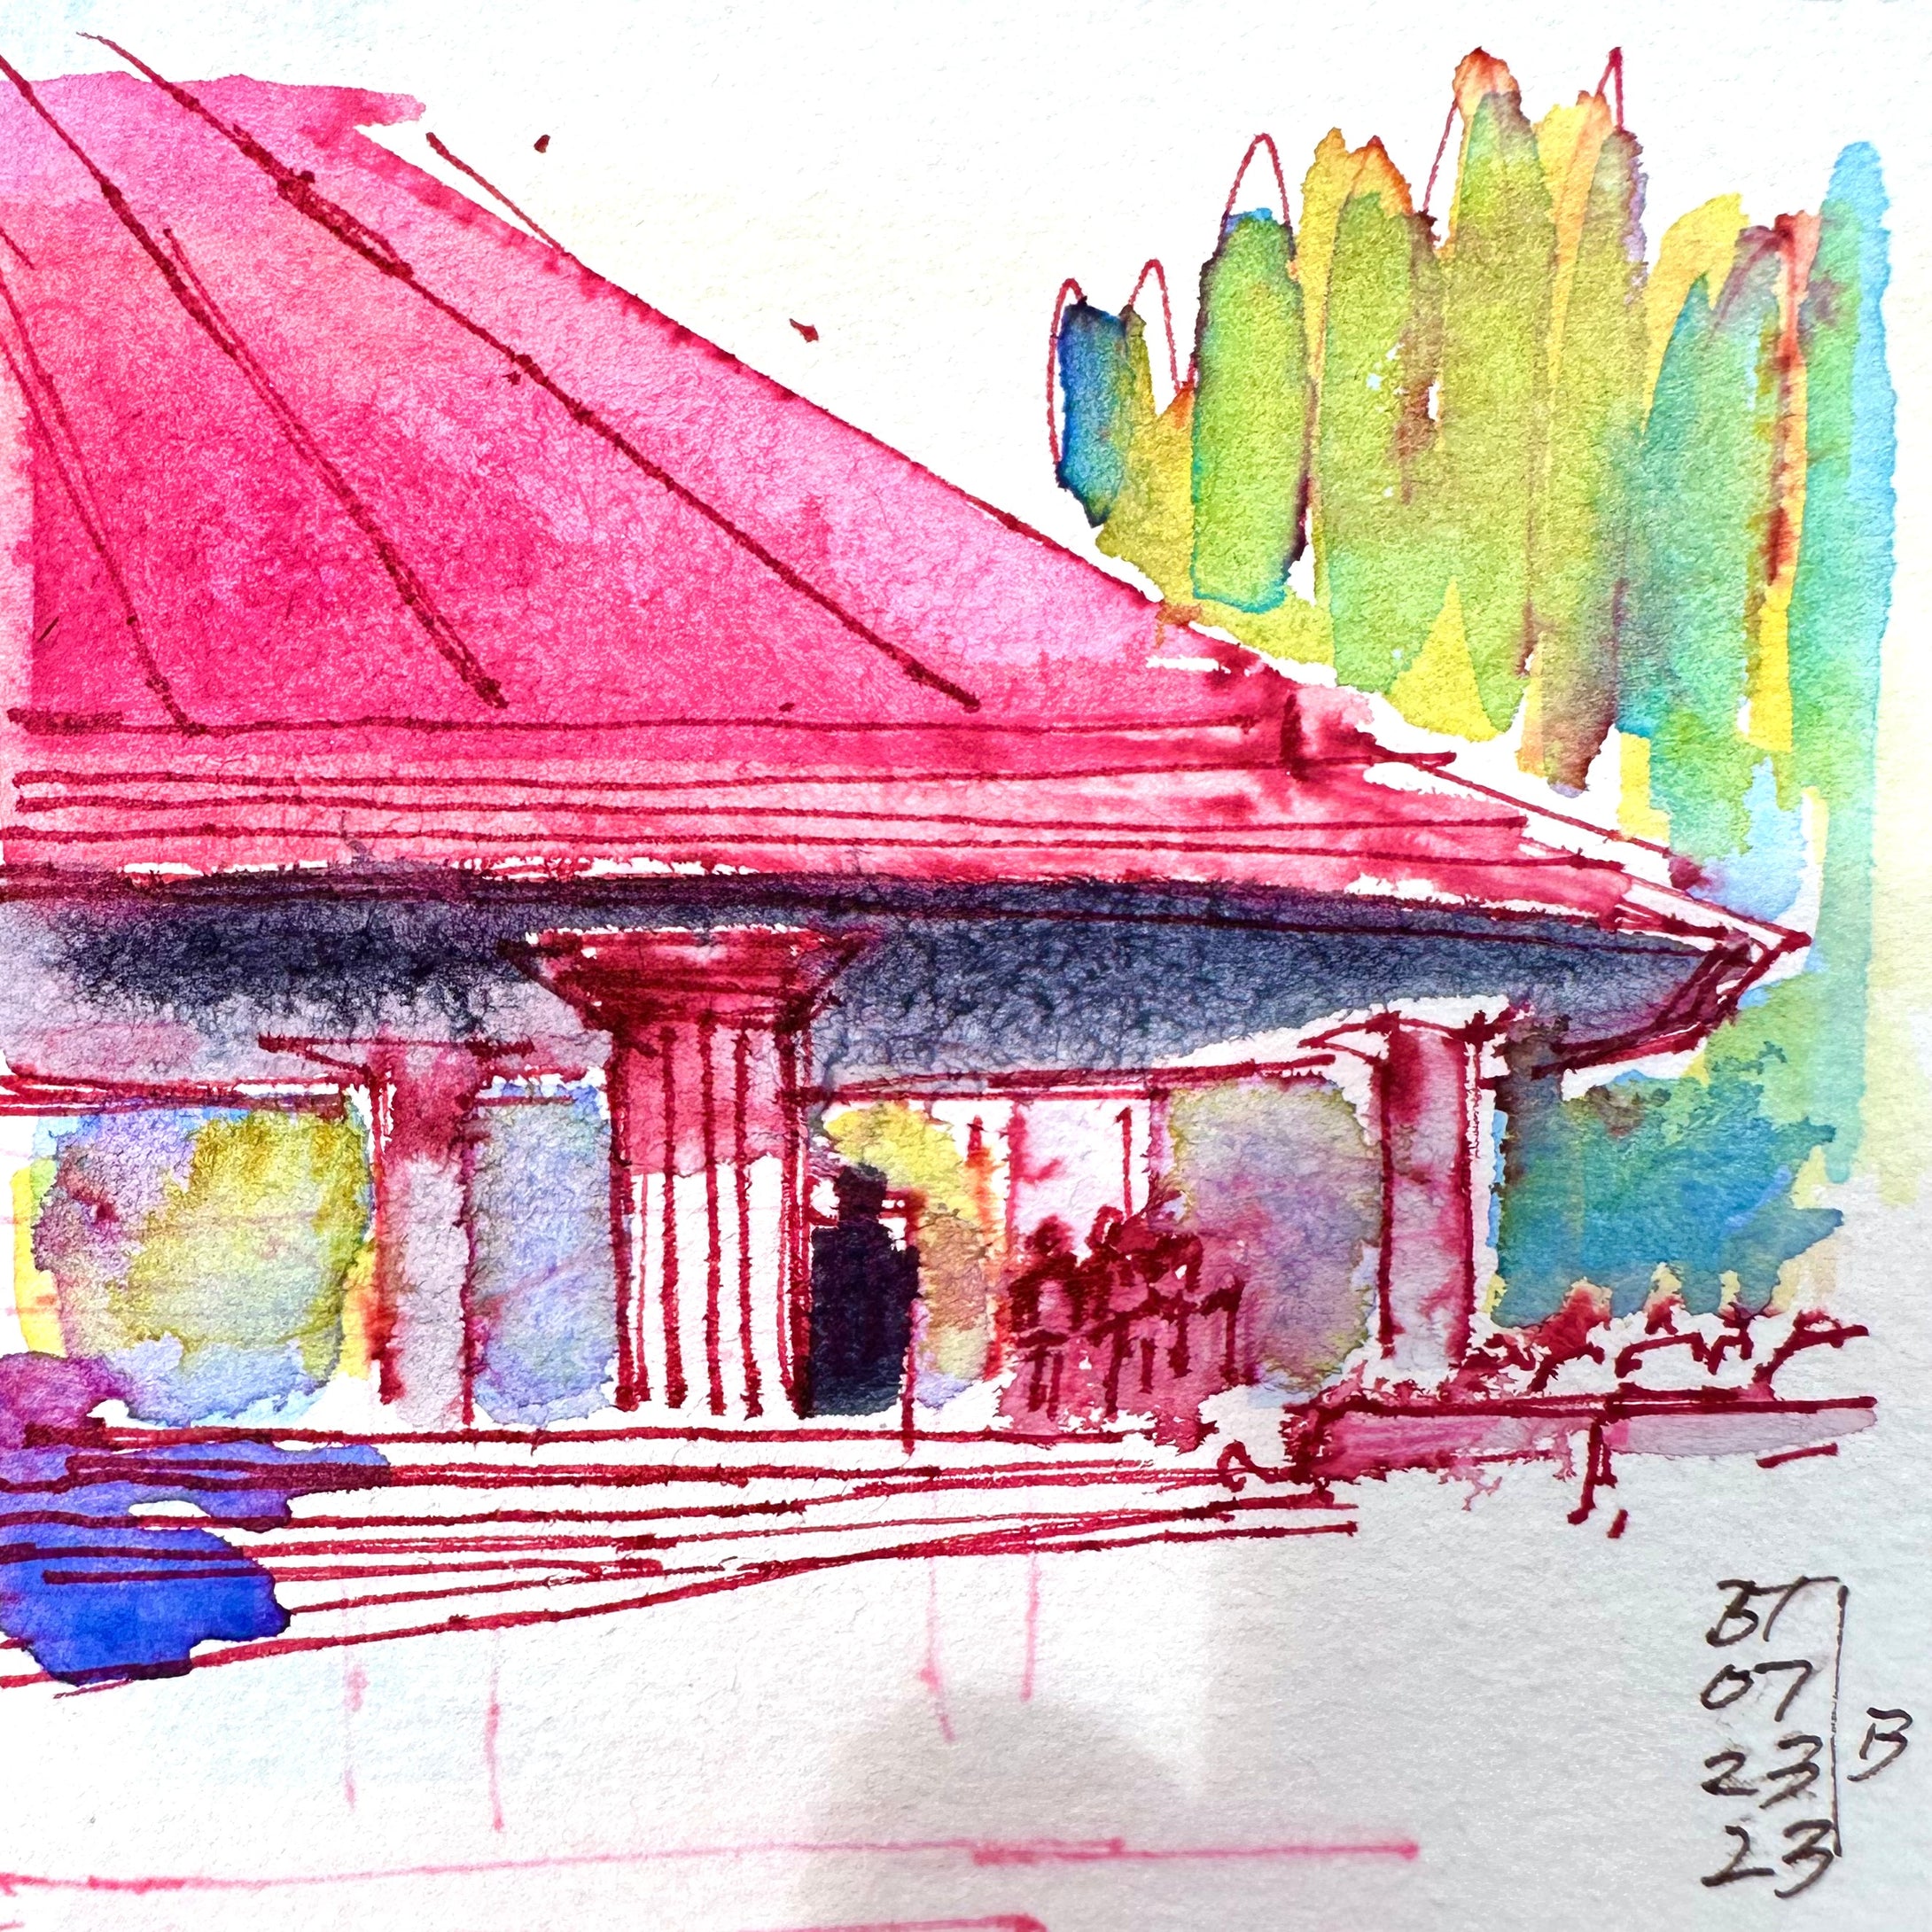 Kapiolani Park Bandstand, 07.23.23 (B)